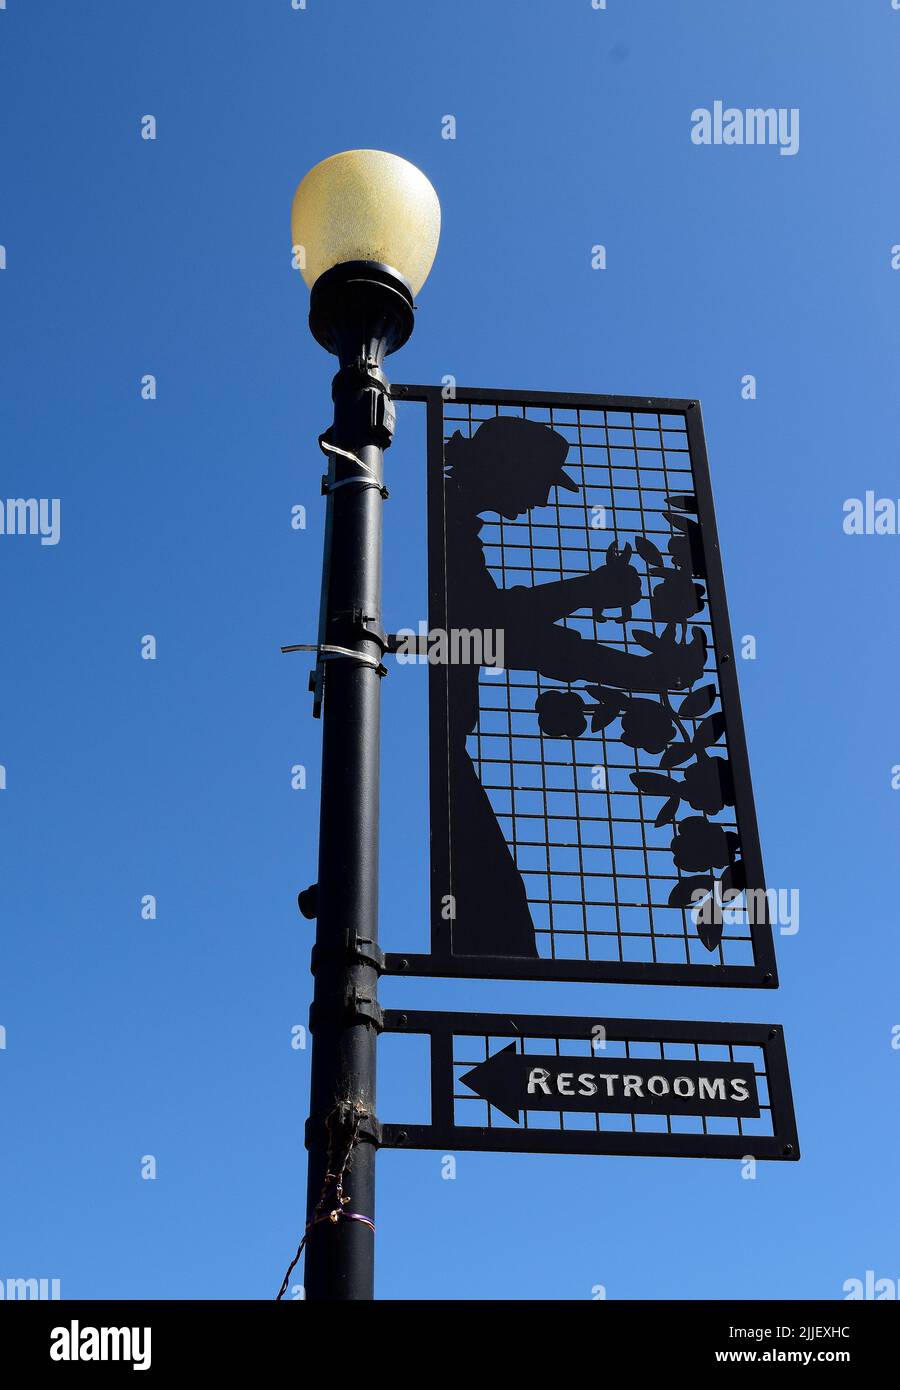 Letrero de la flecha de la dirección de los baños en el poste de la lámpara en el districto de Niles, de Fremont, de California, americano, EE. UU., EE. UU. Foto de stock